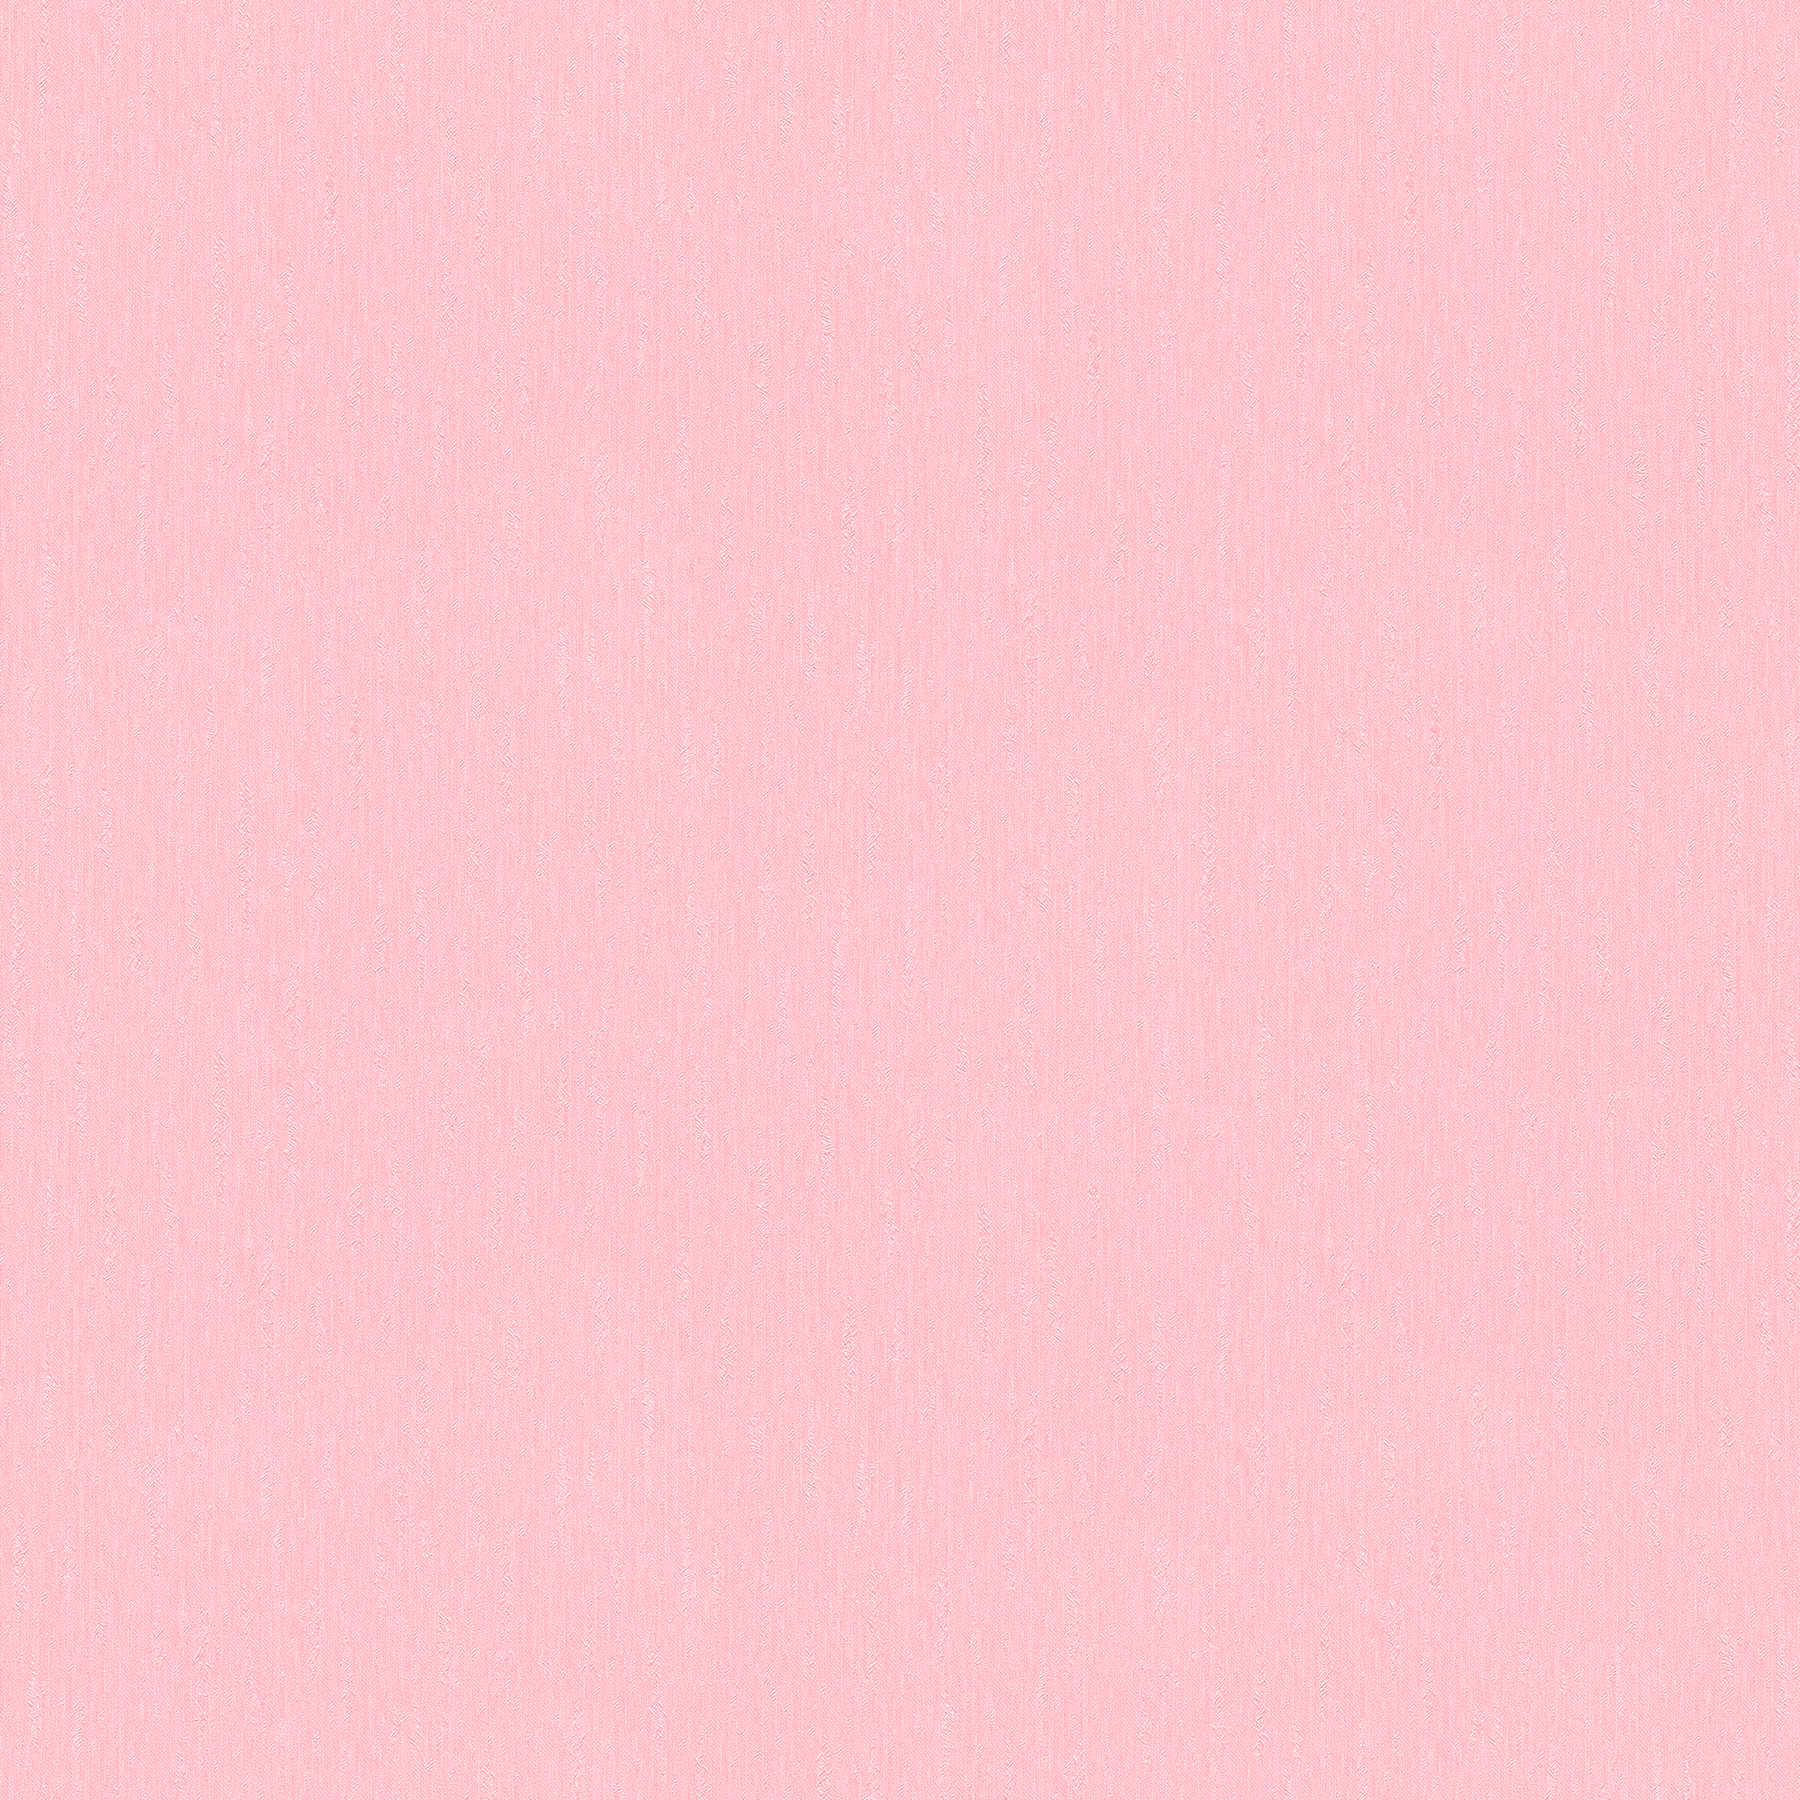 Roze vliesbehang effen lichtroze met structuur oppervlak
